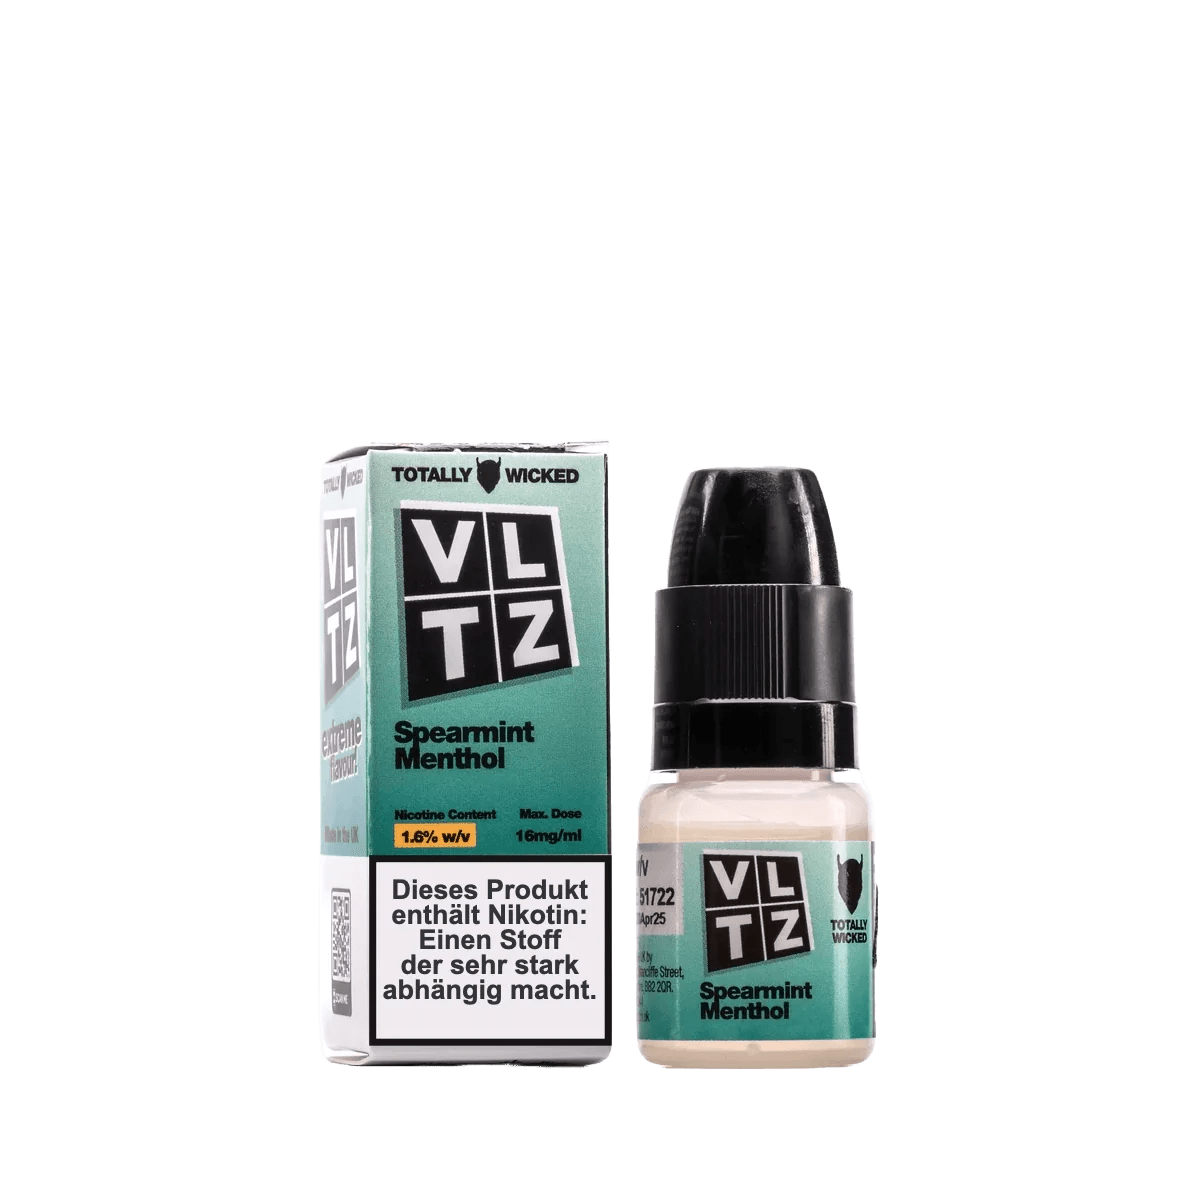 Totally Wicked VLTZ - Spearmint Menthol (Minze Menthol) 1.6% Nikotinsalz Liquid - EAN 050623016440 - von vape-dealer.de